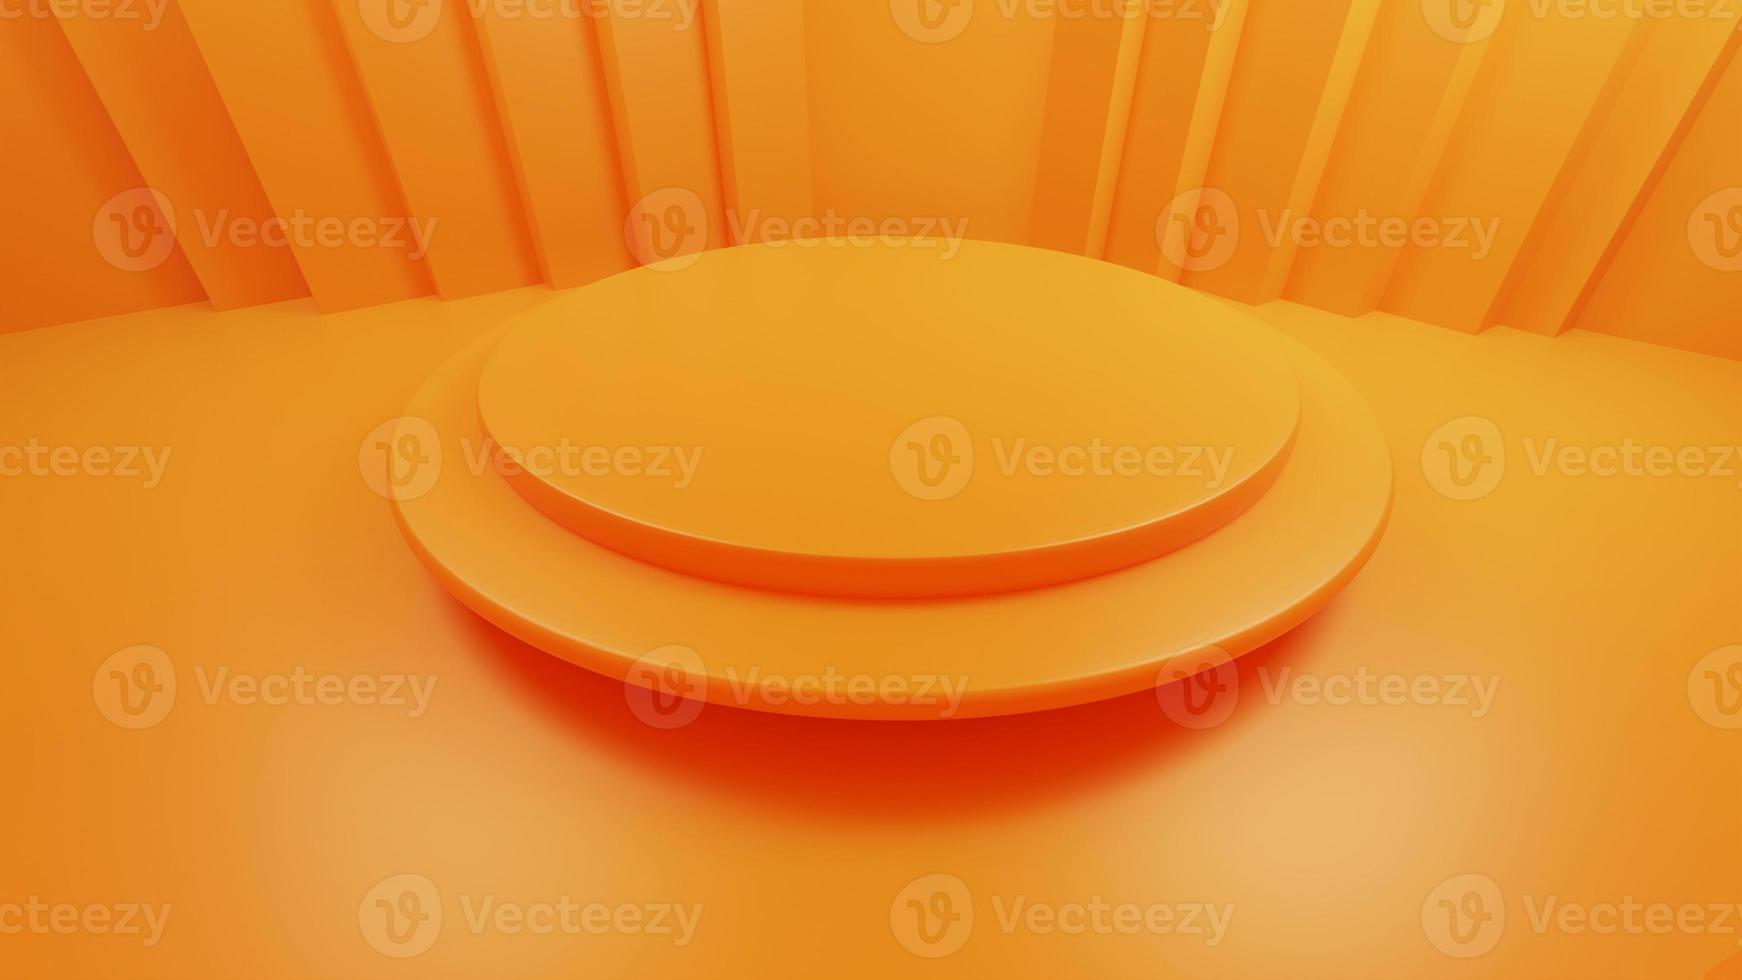 3D-weergave van oranje koopwaar display foto